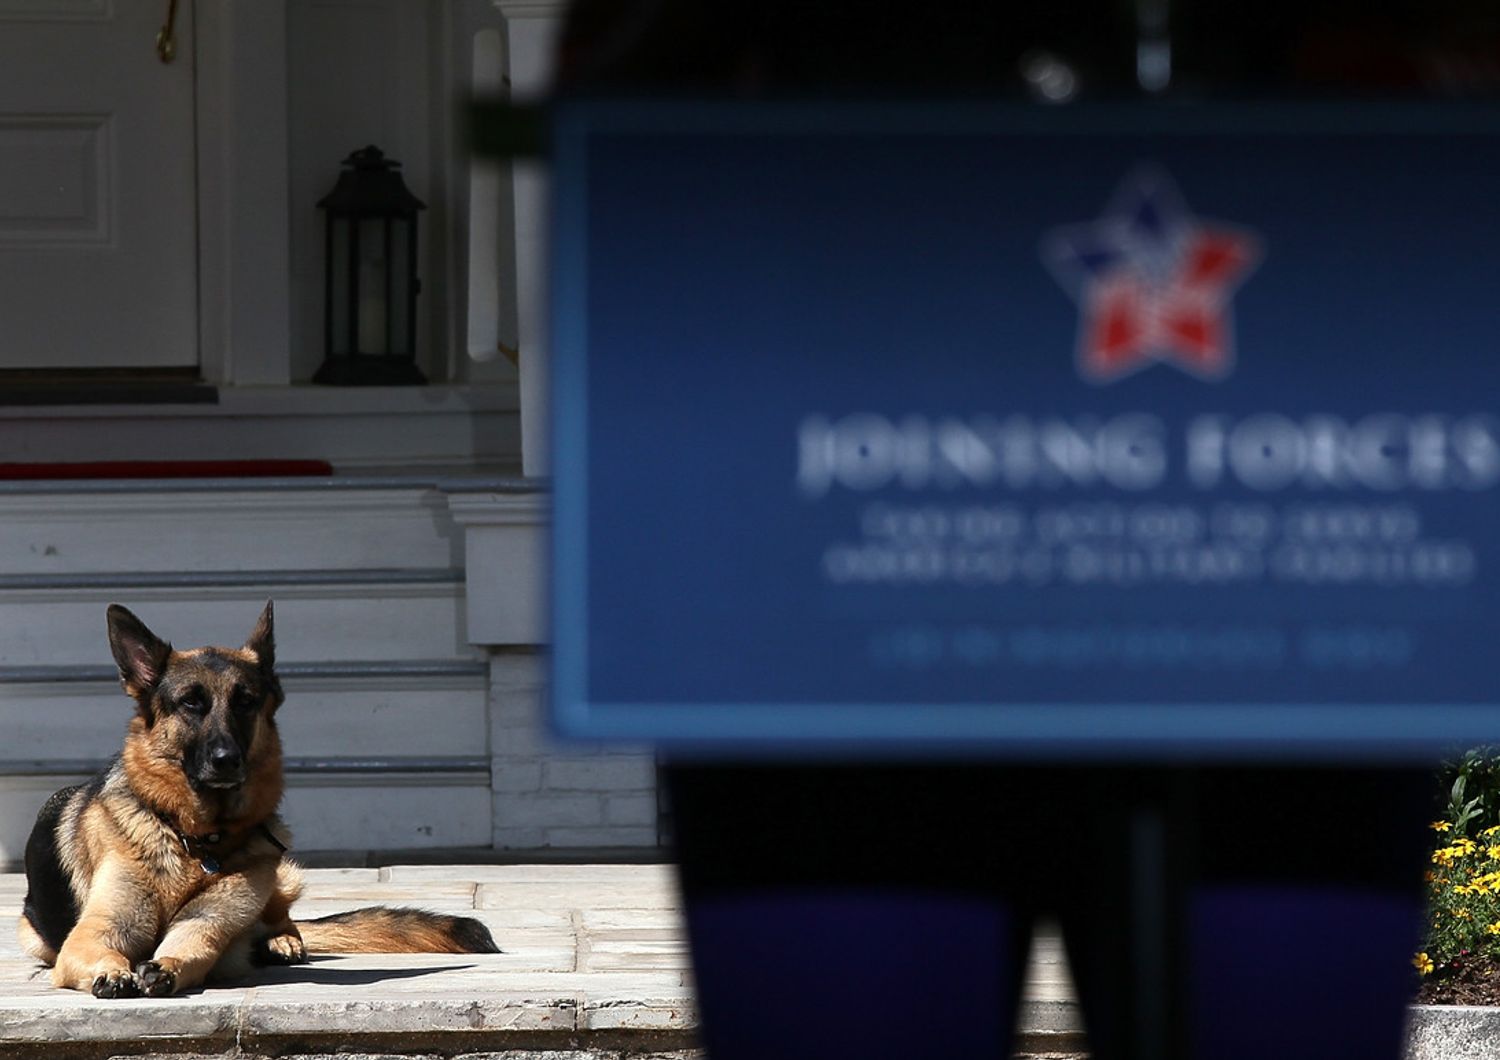 Champ, uno dei due cani di Joe Biden, fotografato alla Casa Bianca ai tempi della presidenza Obama